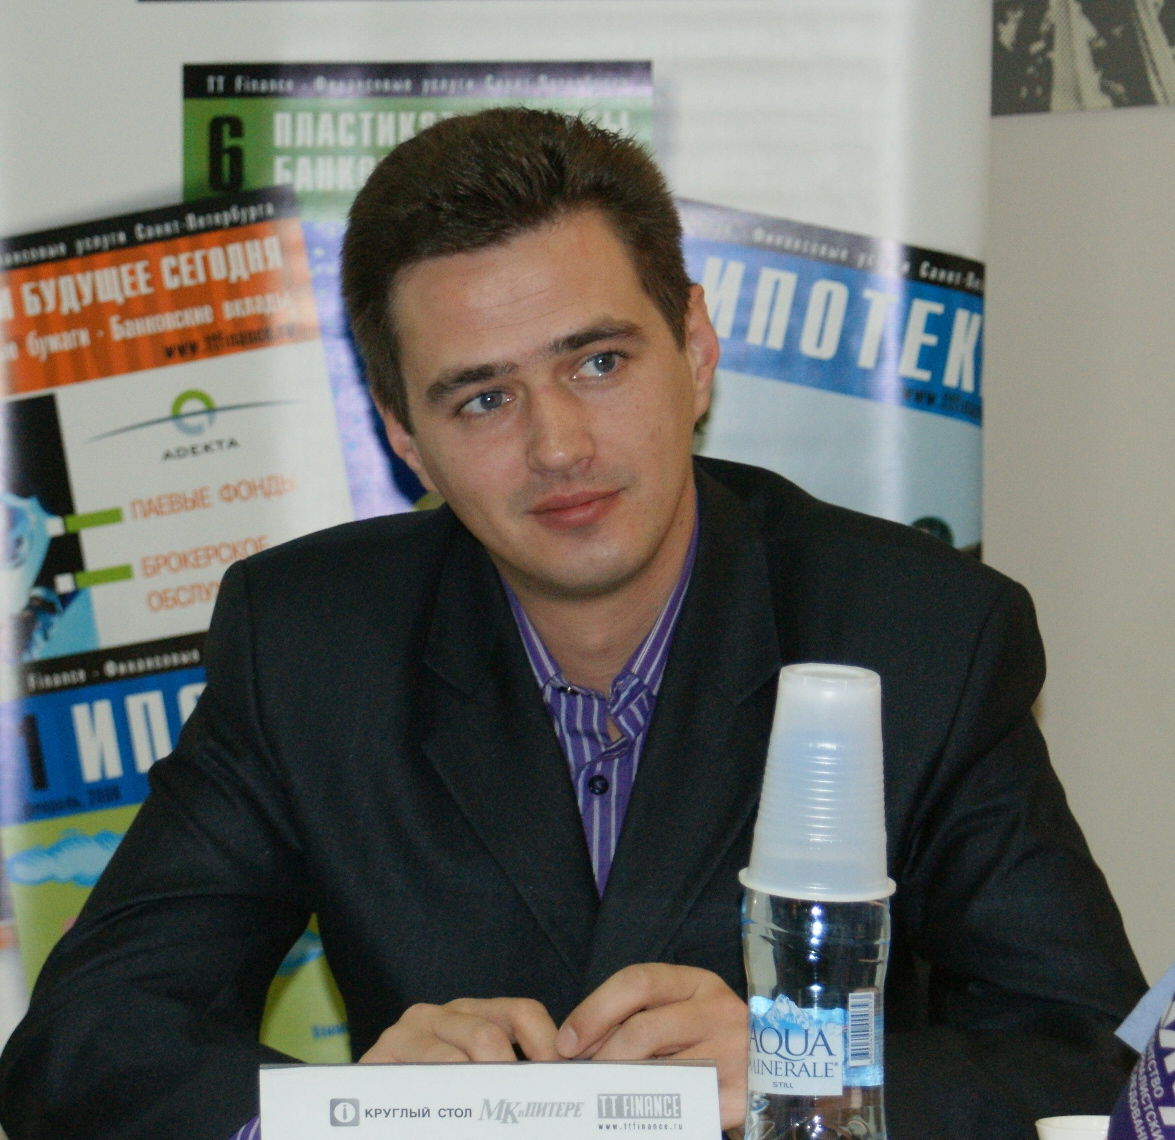 
Холодов Александр Львович - вице-председатель общественного движения 